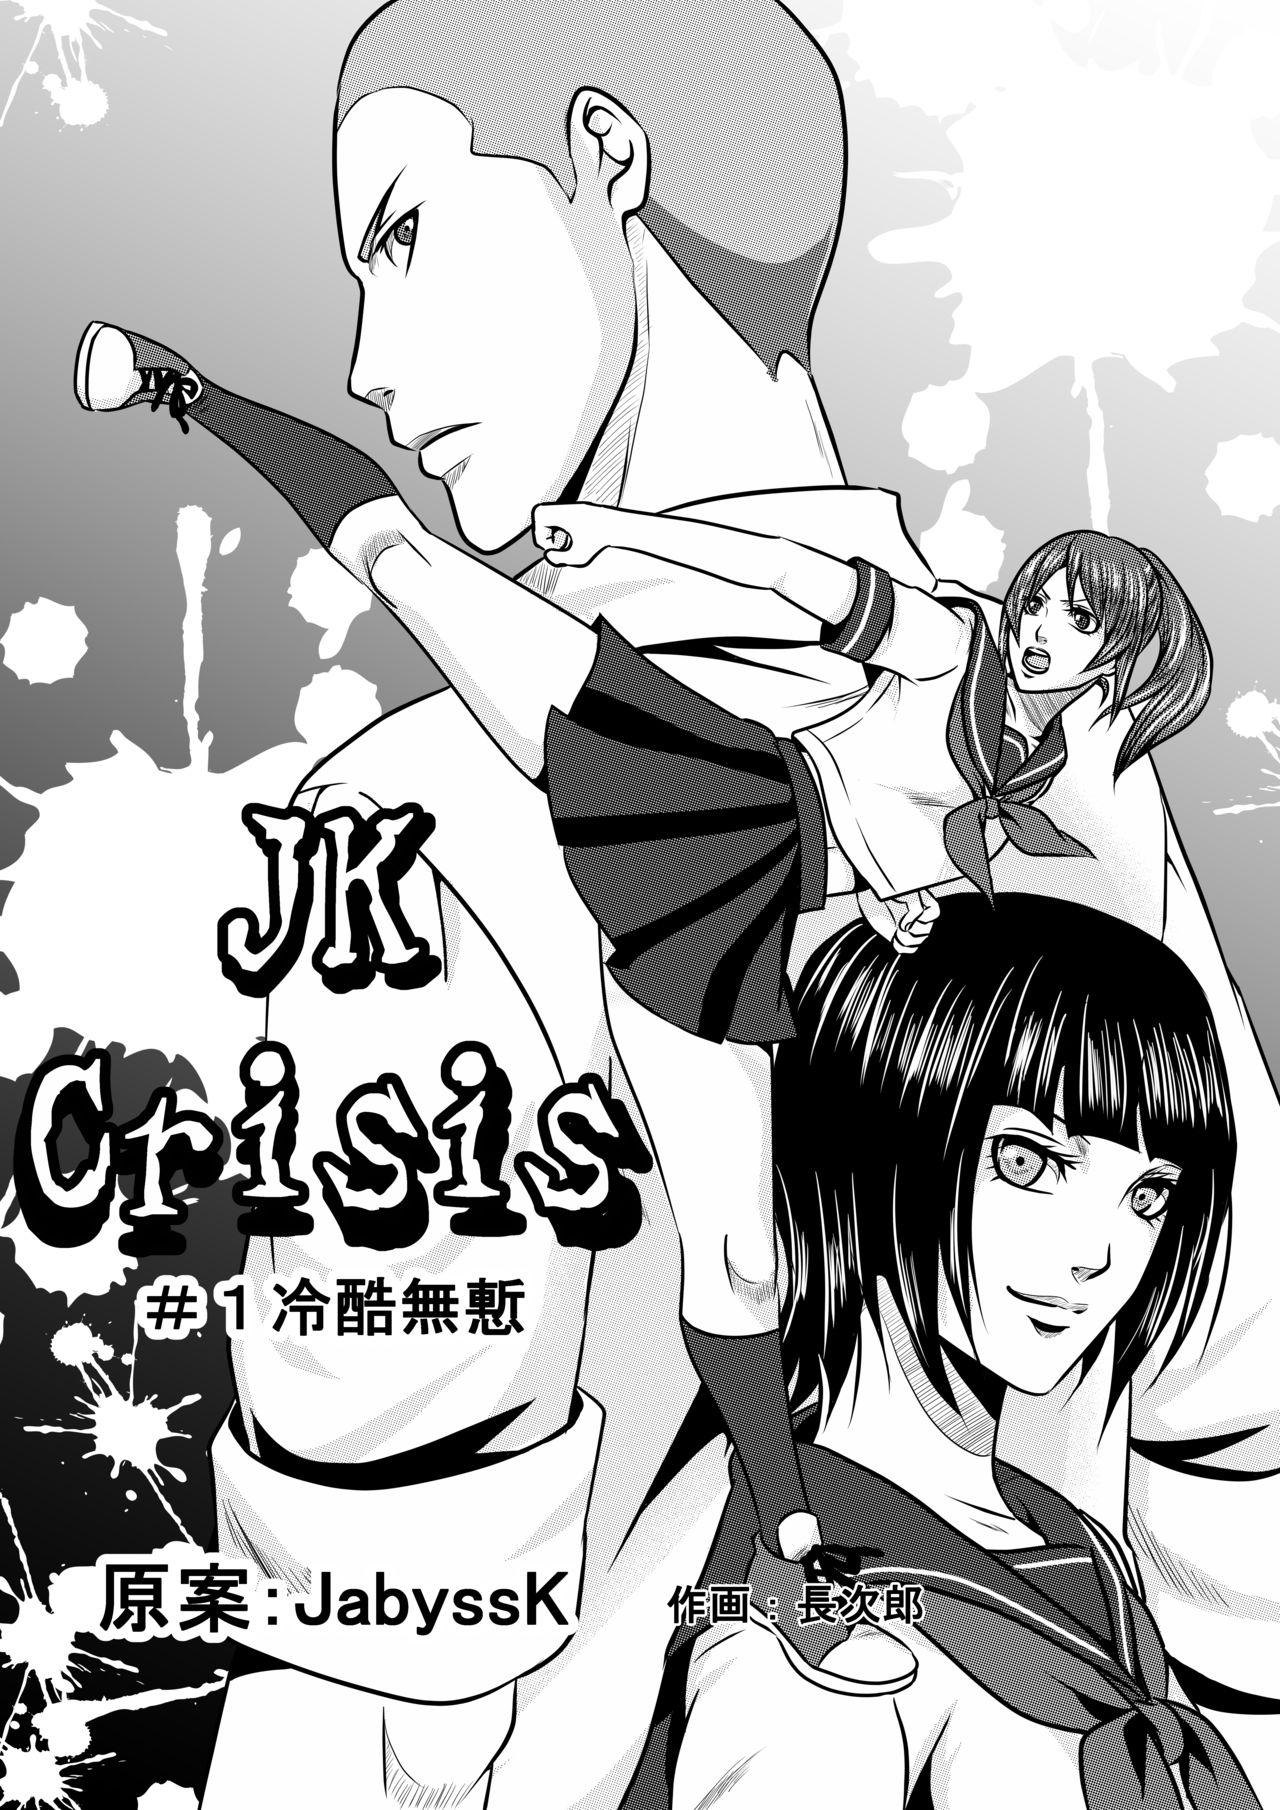 JK Crisis #1_ Cold and Cruel + JK Crisis #2_ Athna 0